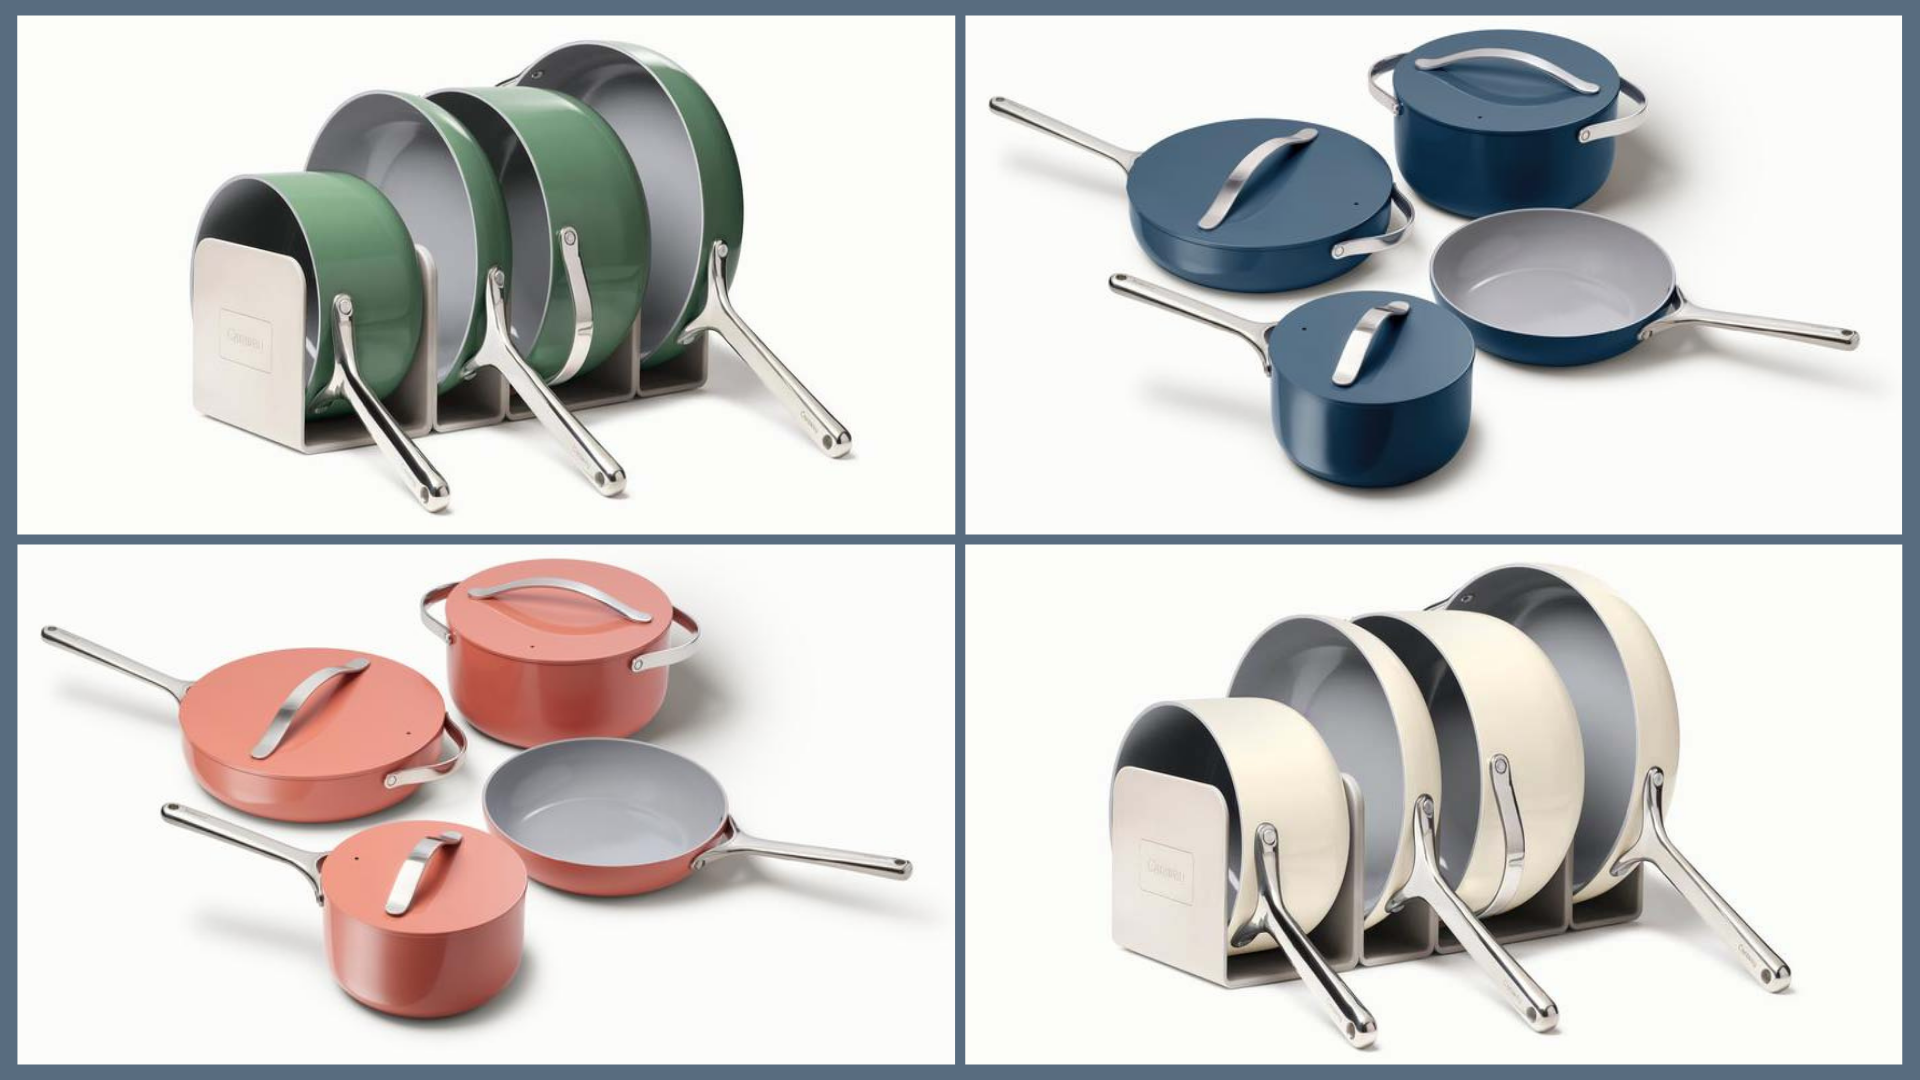 Otantik Non-Stick Aluminum Cast Cookware Set (7 Piece) Ceramic Marble  coating, Pots, Pans, Lids (Vented) - Cool Handle - PTFE & PFOA Free -  Compatible